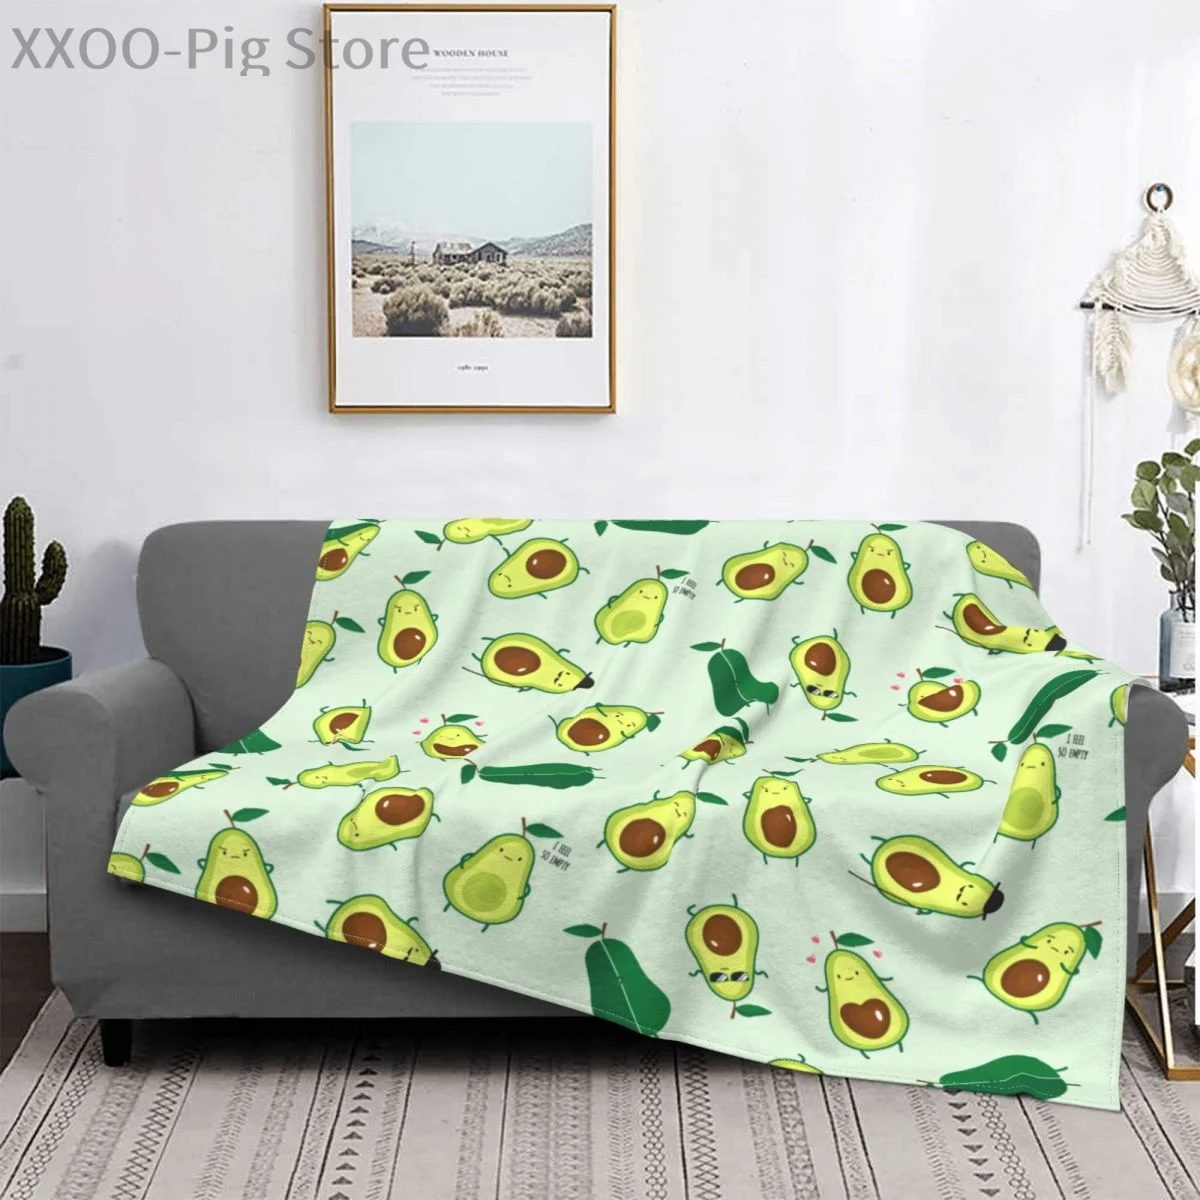 

Плед в виде авокадо, супермягкое легкое искусственное одеяло, уютное пушистое плюшевое одеяло из микрофибры для жаркого сна